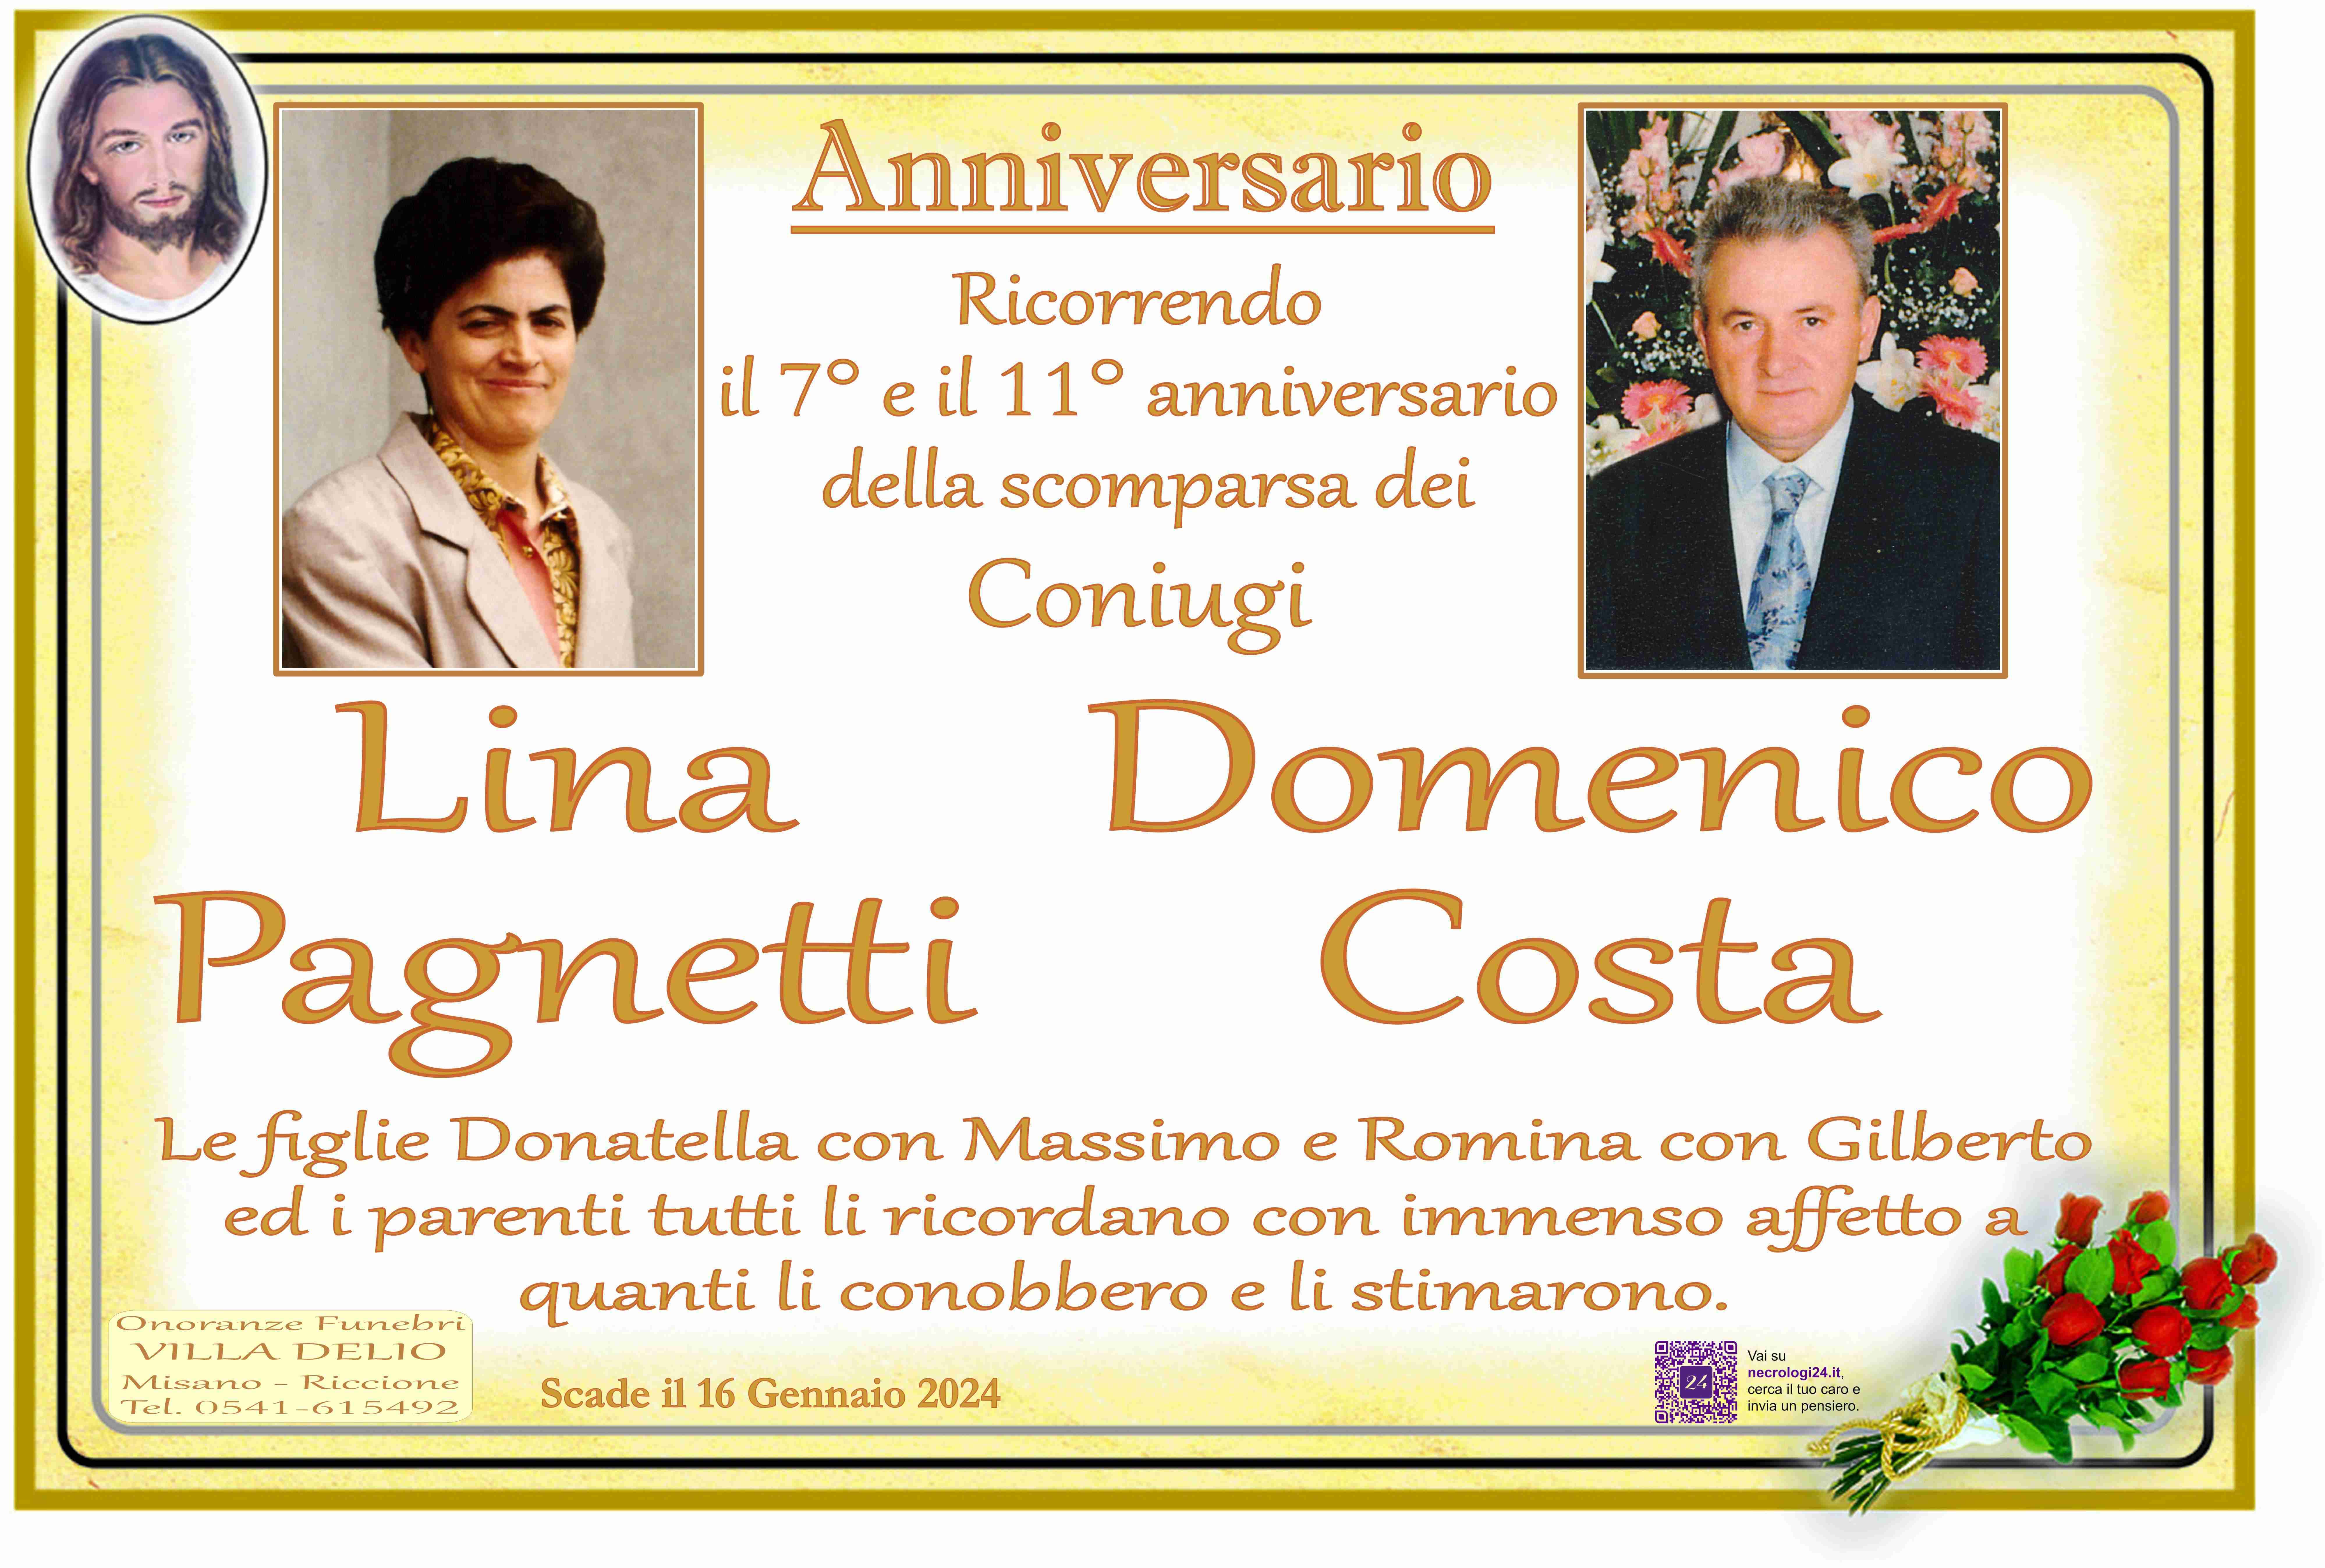 Domenico Costa e Pagnetti Lina